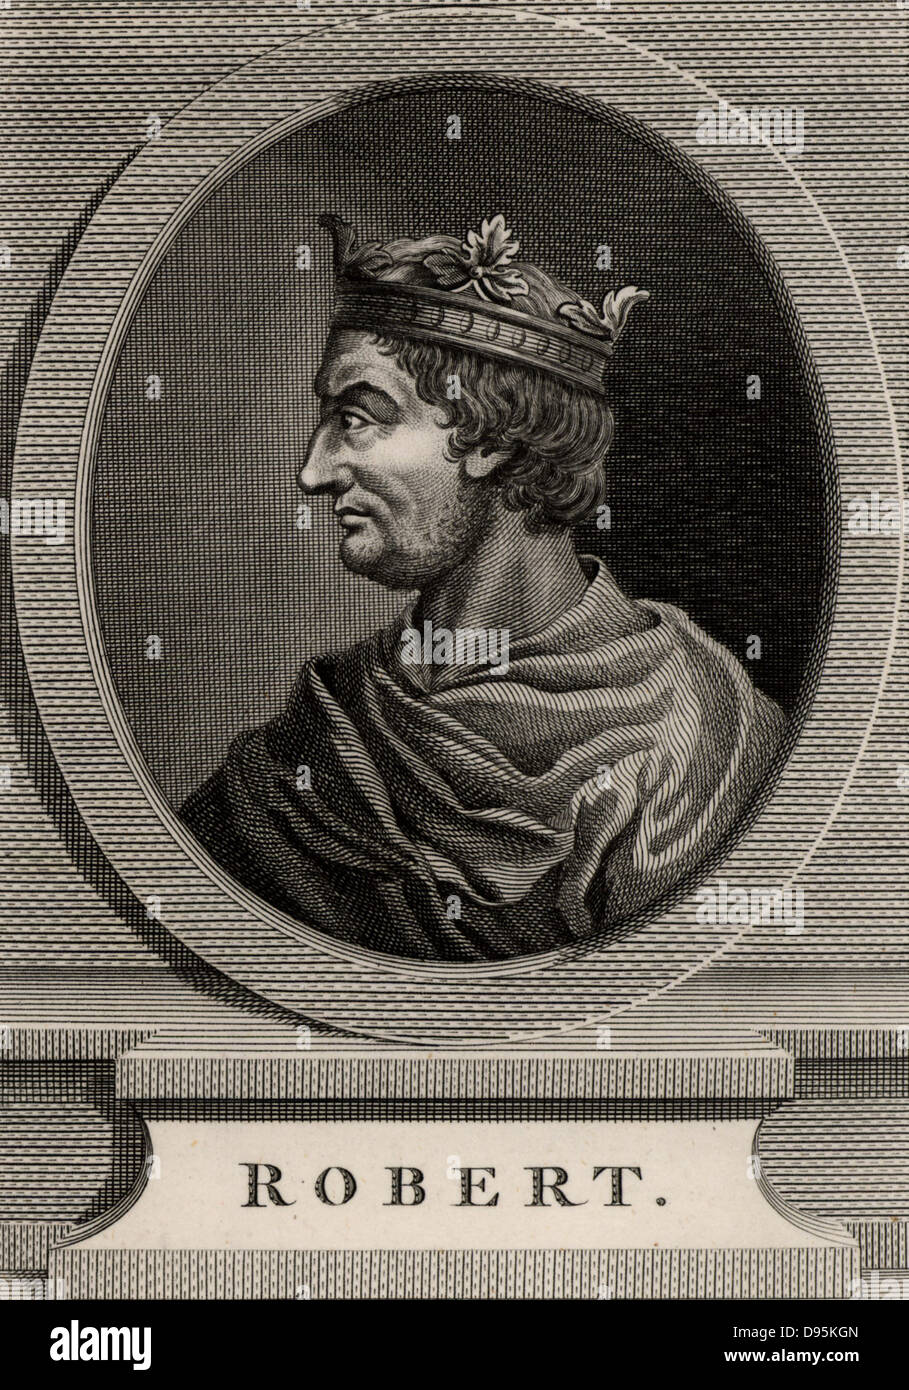 Robert II. der fromme (971-1031) Mitglied der Dynastie der Kapetinger.  König von Frankreich von 996. Kupferstich, 1793. Stockfoto